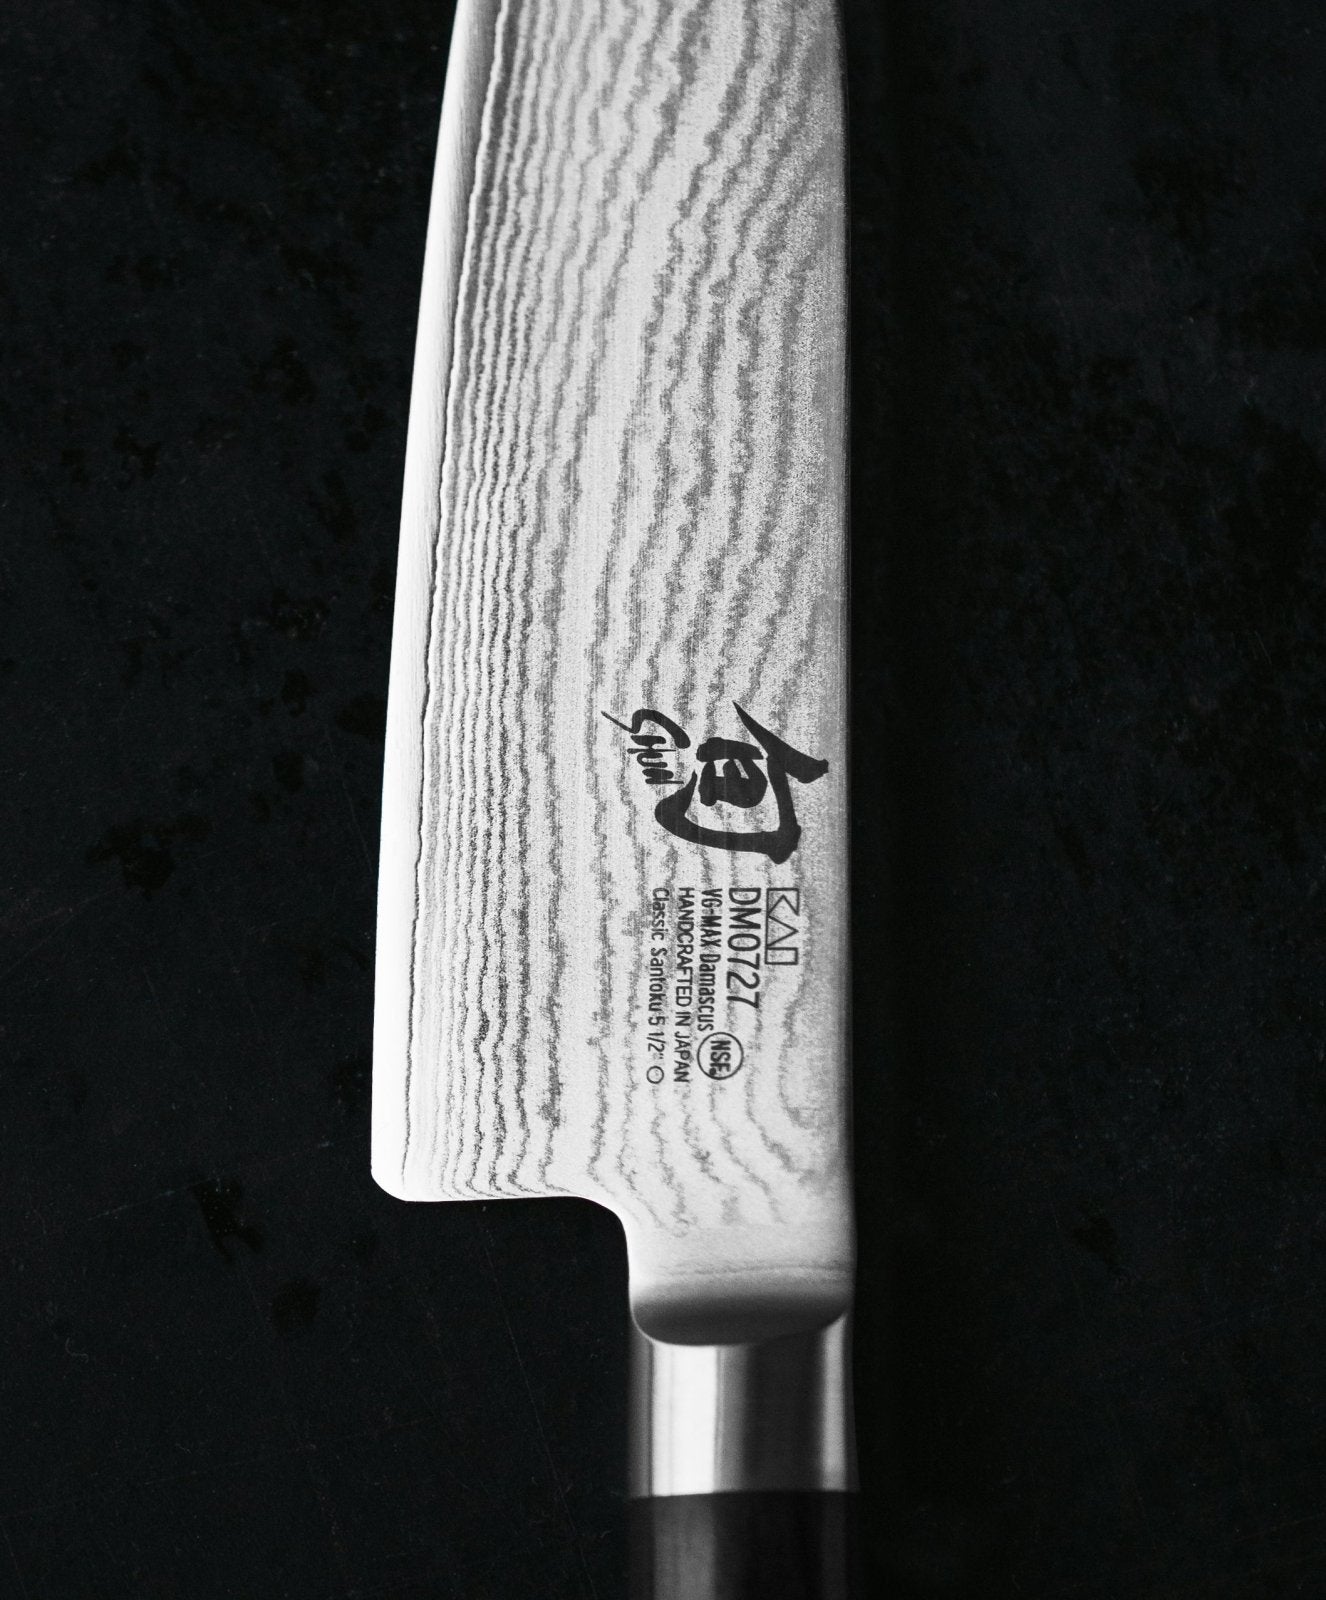 KAI Shun 20cm Carving Knife - KAI-DM-0703 - The Cotswold Knife Company